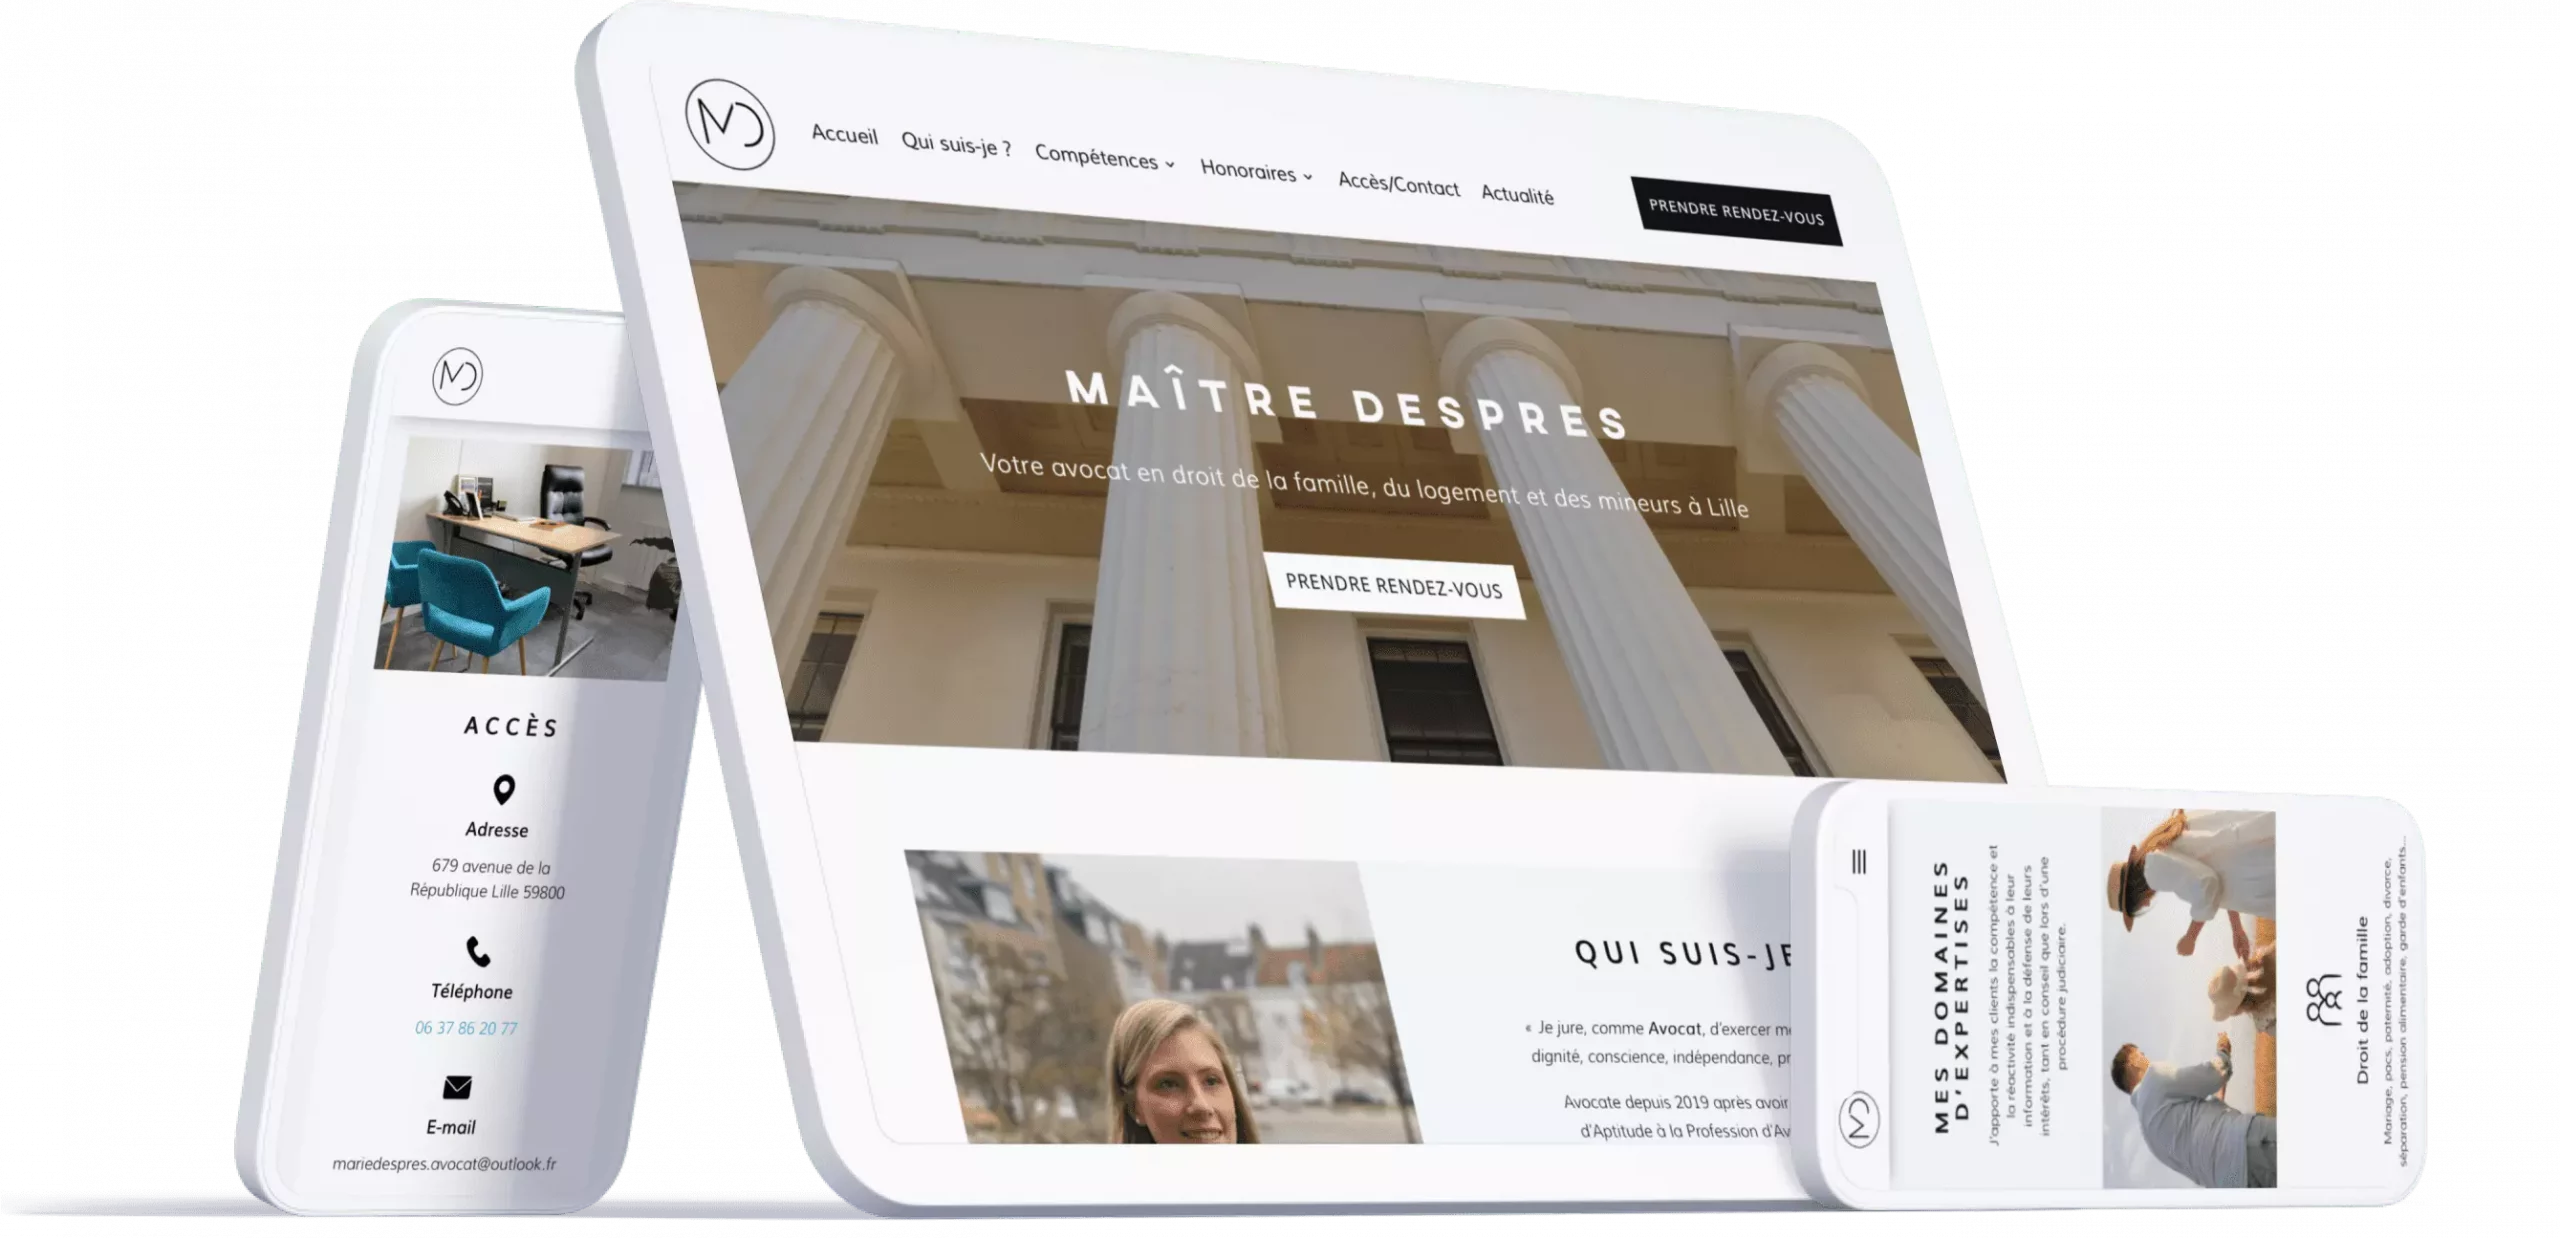 Nous combinons l’expertise en UX & UI design pour créer des sites web esthétiques, fonctionnels, avec une navigation intuitive et agréable.